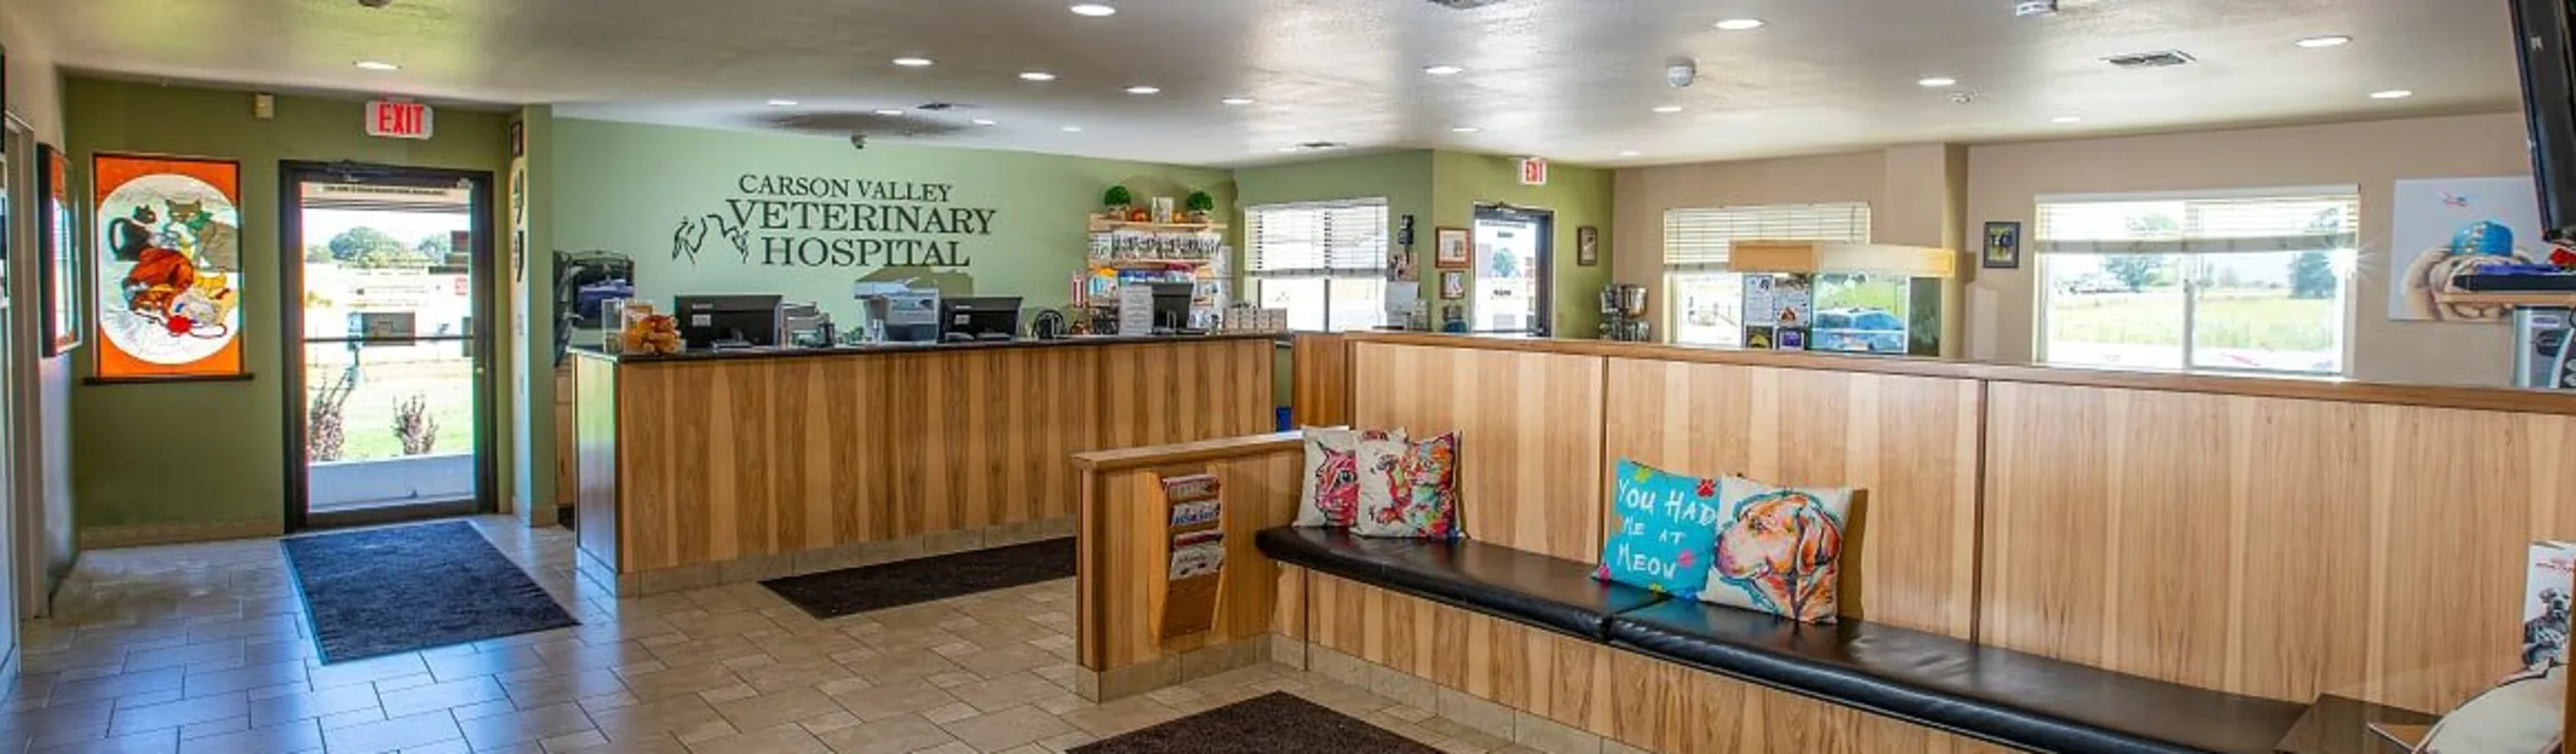 Carson Valley Veterinary Hospital lobby